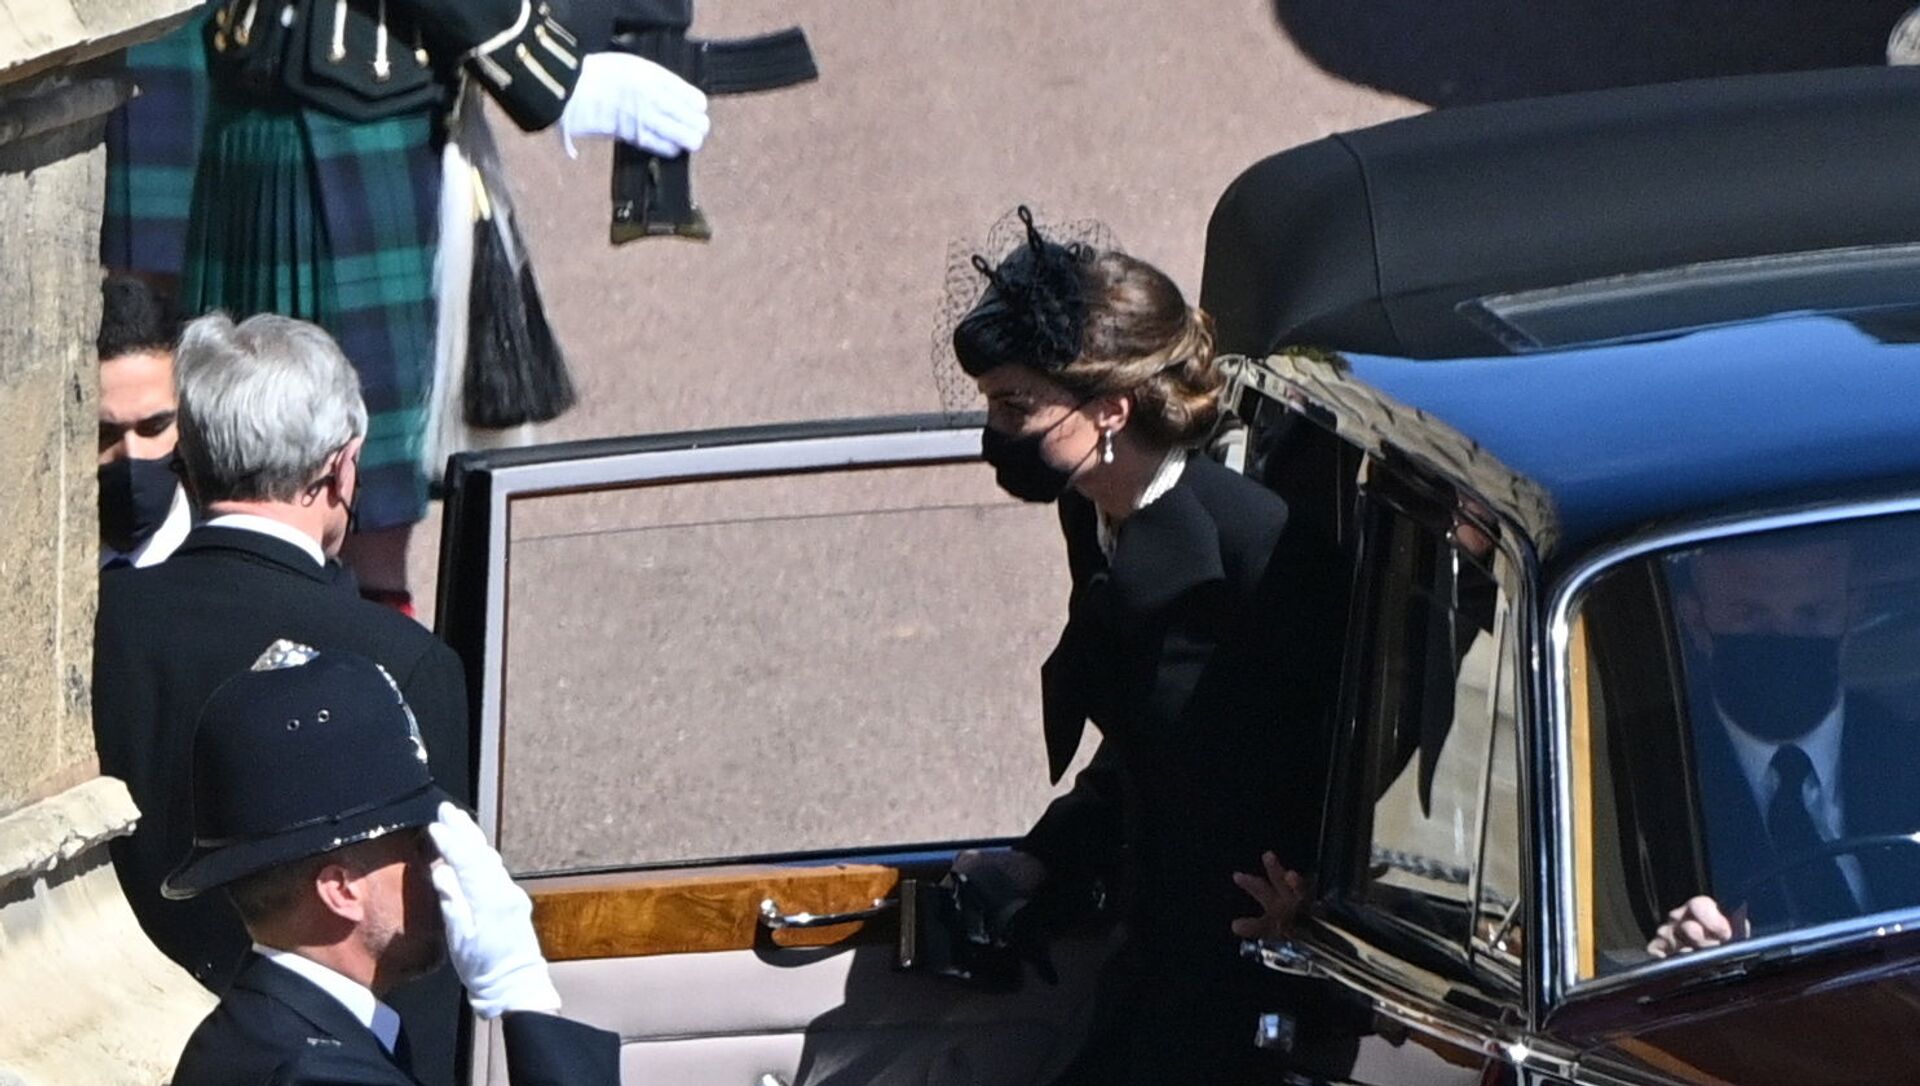 دوقة كامبريدج، كيت ميدلتون، لحظة وصولها قلعة وندسور لحضور جنازة الأمير فيليب، بريطانيا، 17 نيسان/ أبريل 2021 - سبوتنيك عربي, 1920, 17.04.2021